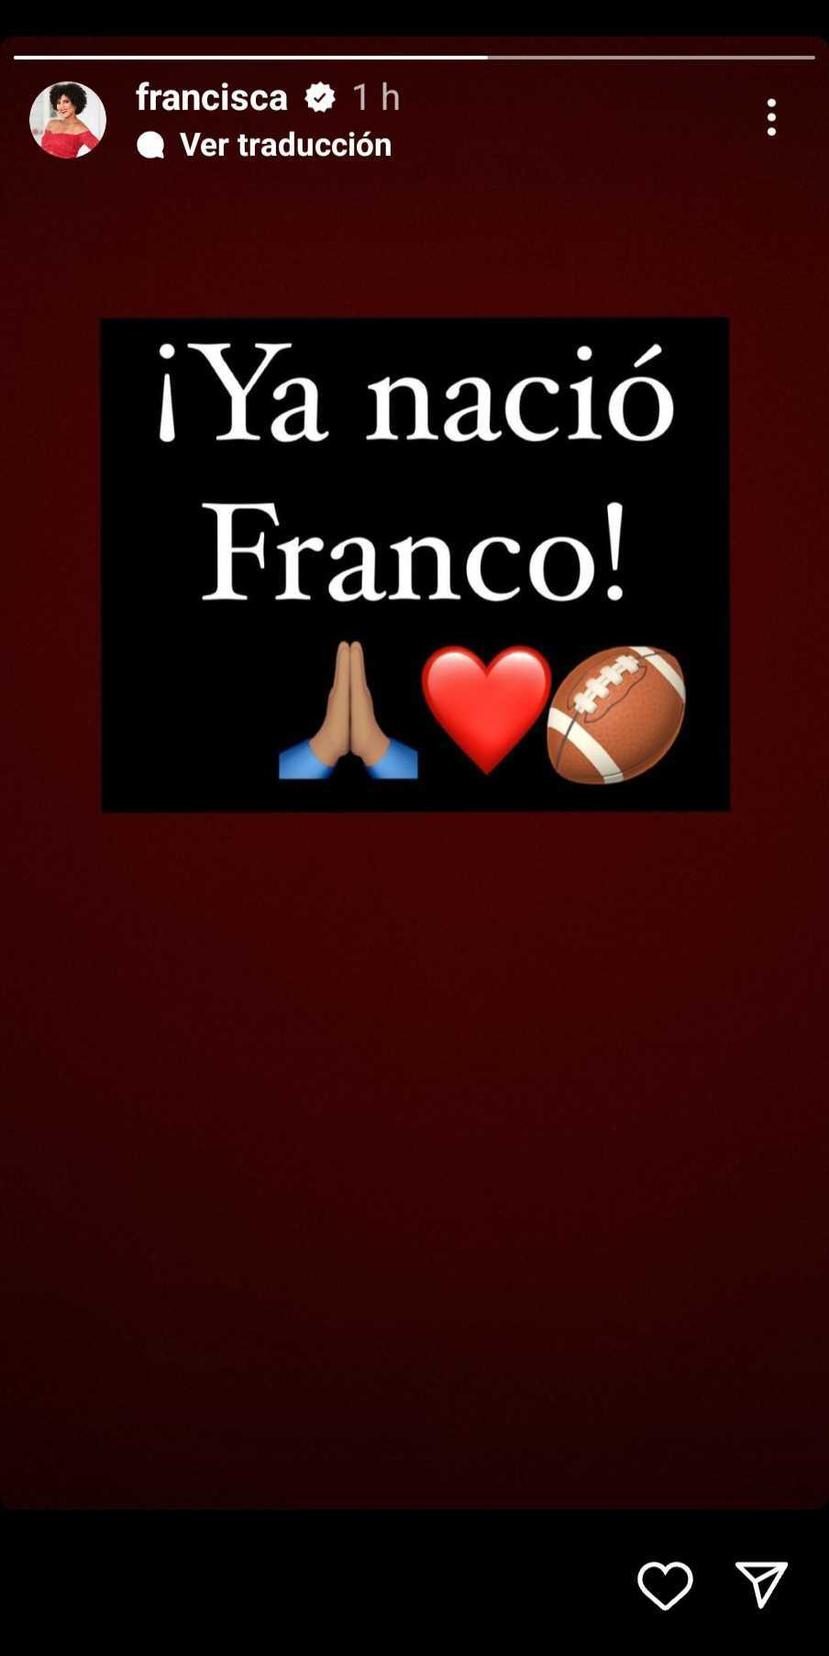 Francisca dijo a través de una historia en su cuenta de Instagram ¡Ya nació Franco!”, acompañado de varios emojis.